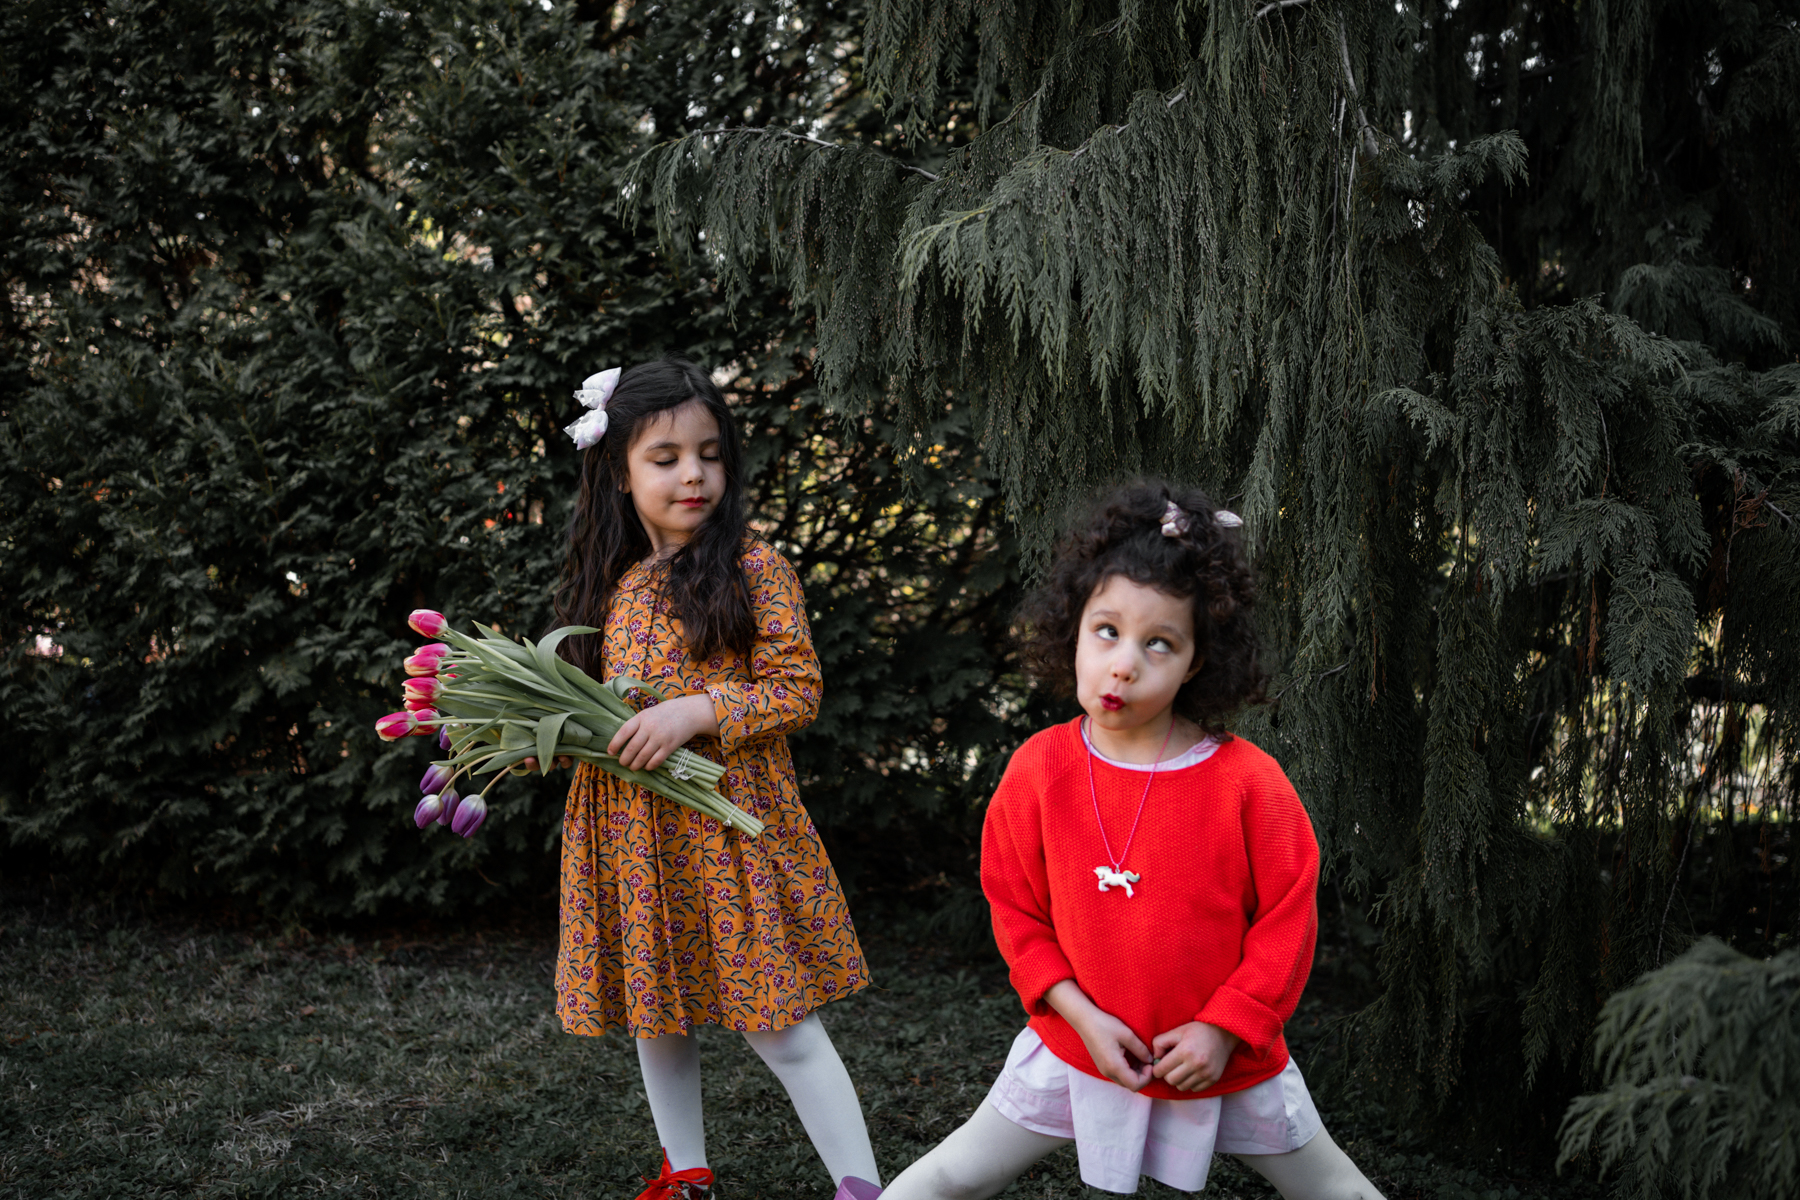 Anniversaire confiné, Coronavirus, 2 petites filles font les clowns